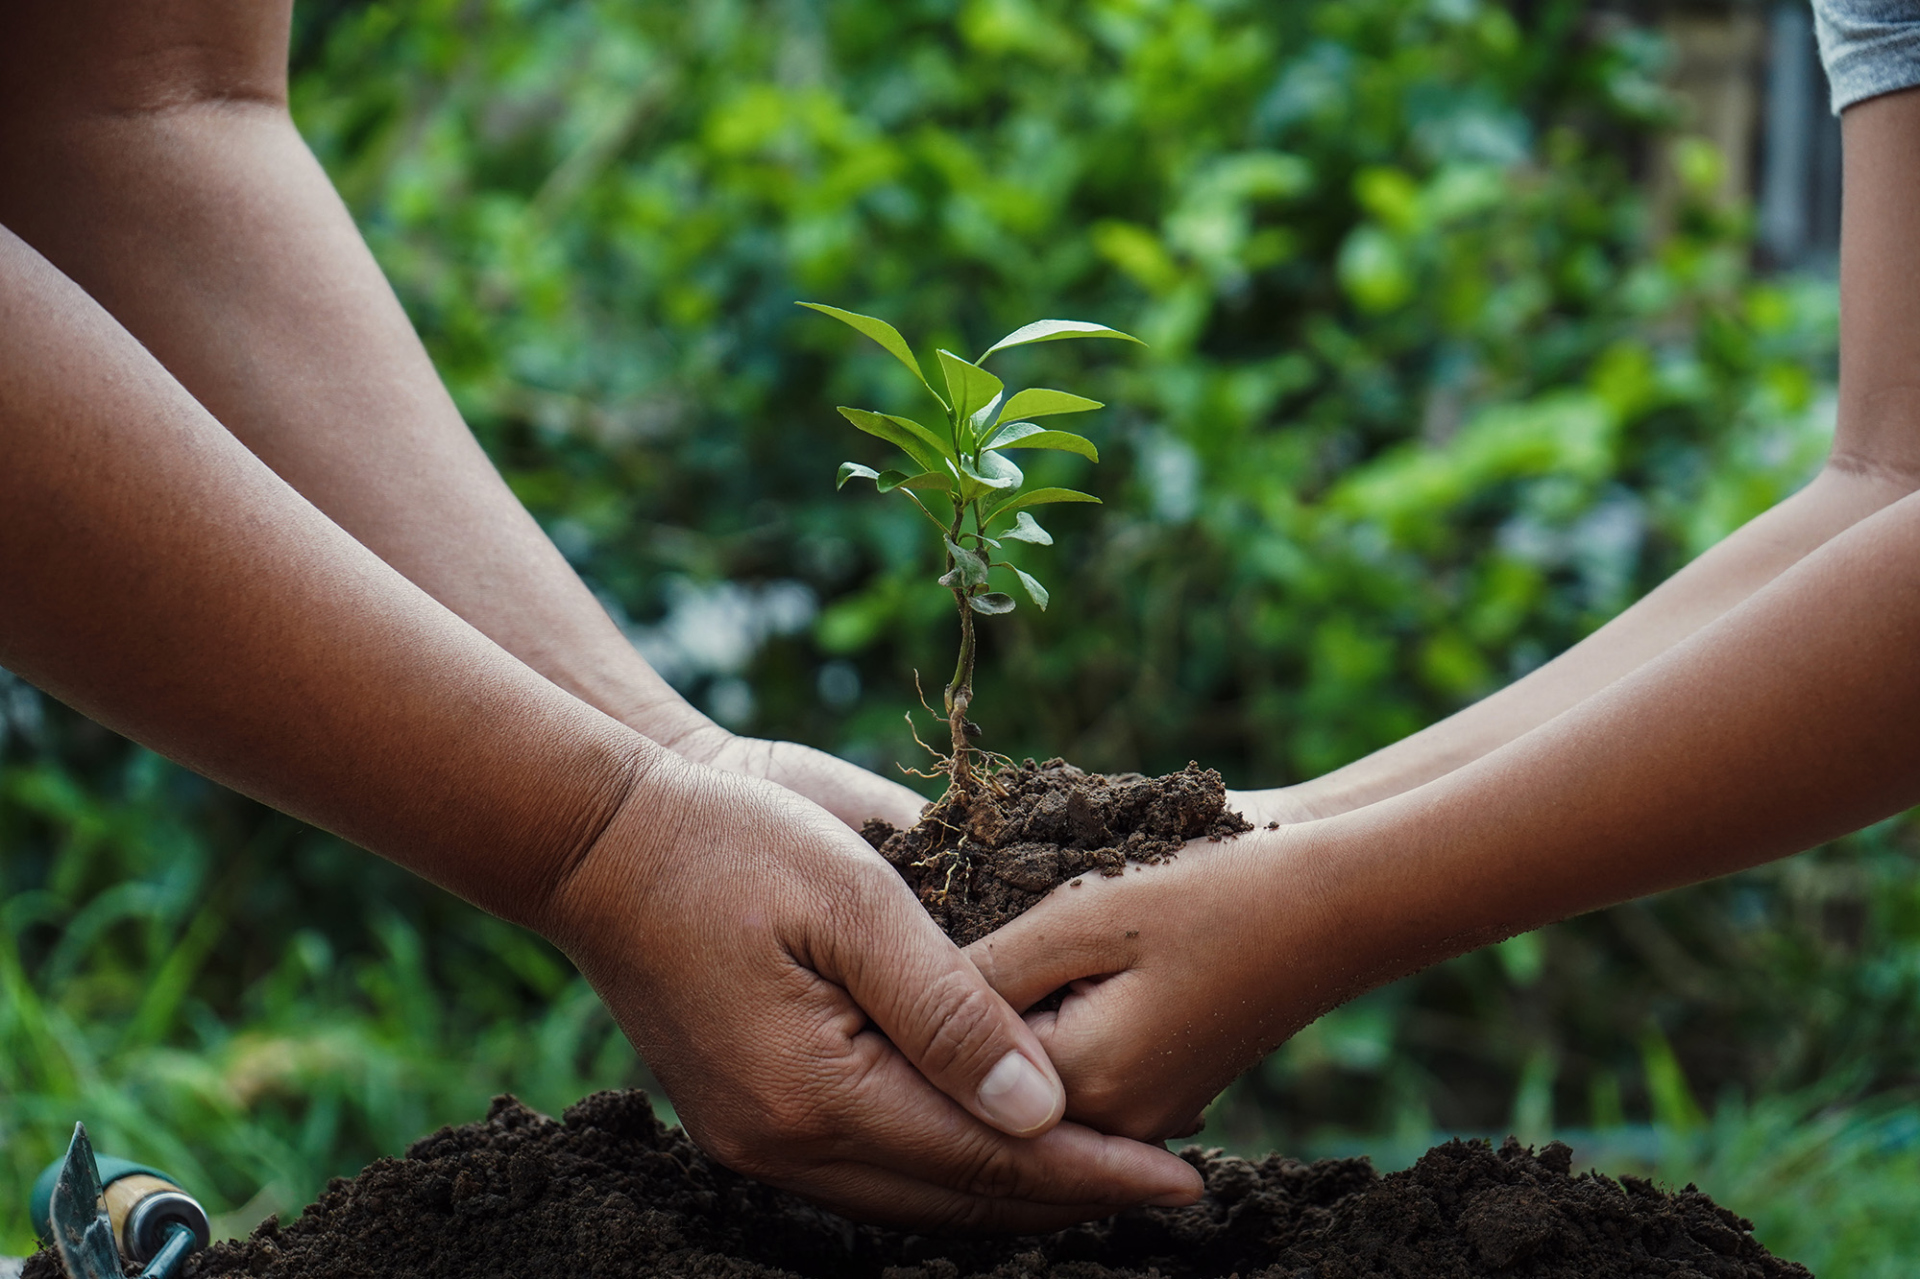 Two black women plant a tree in soil